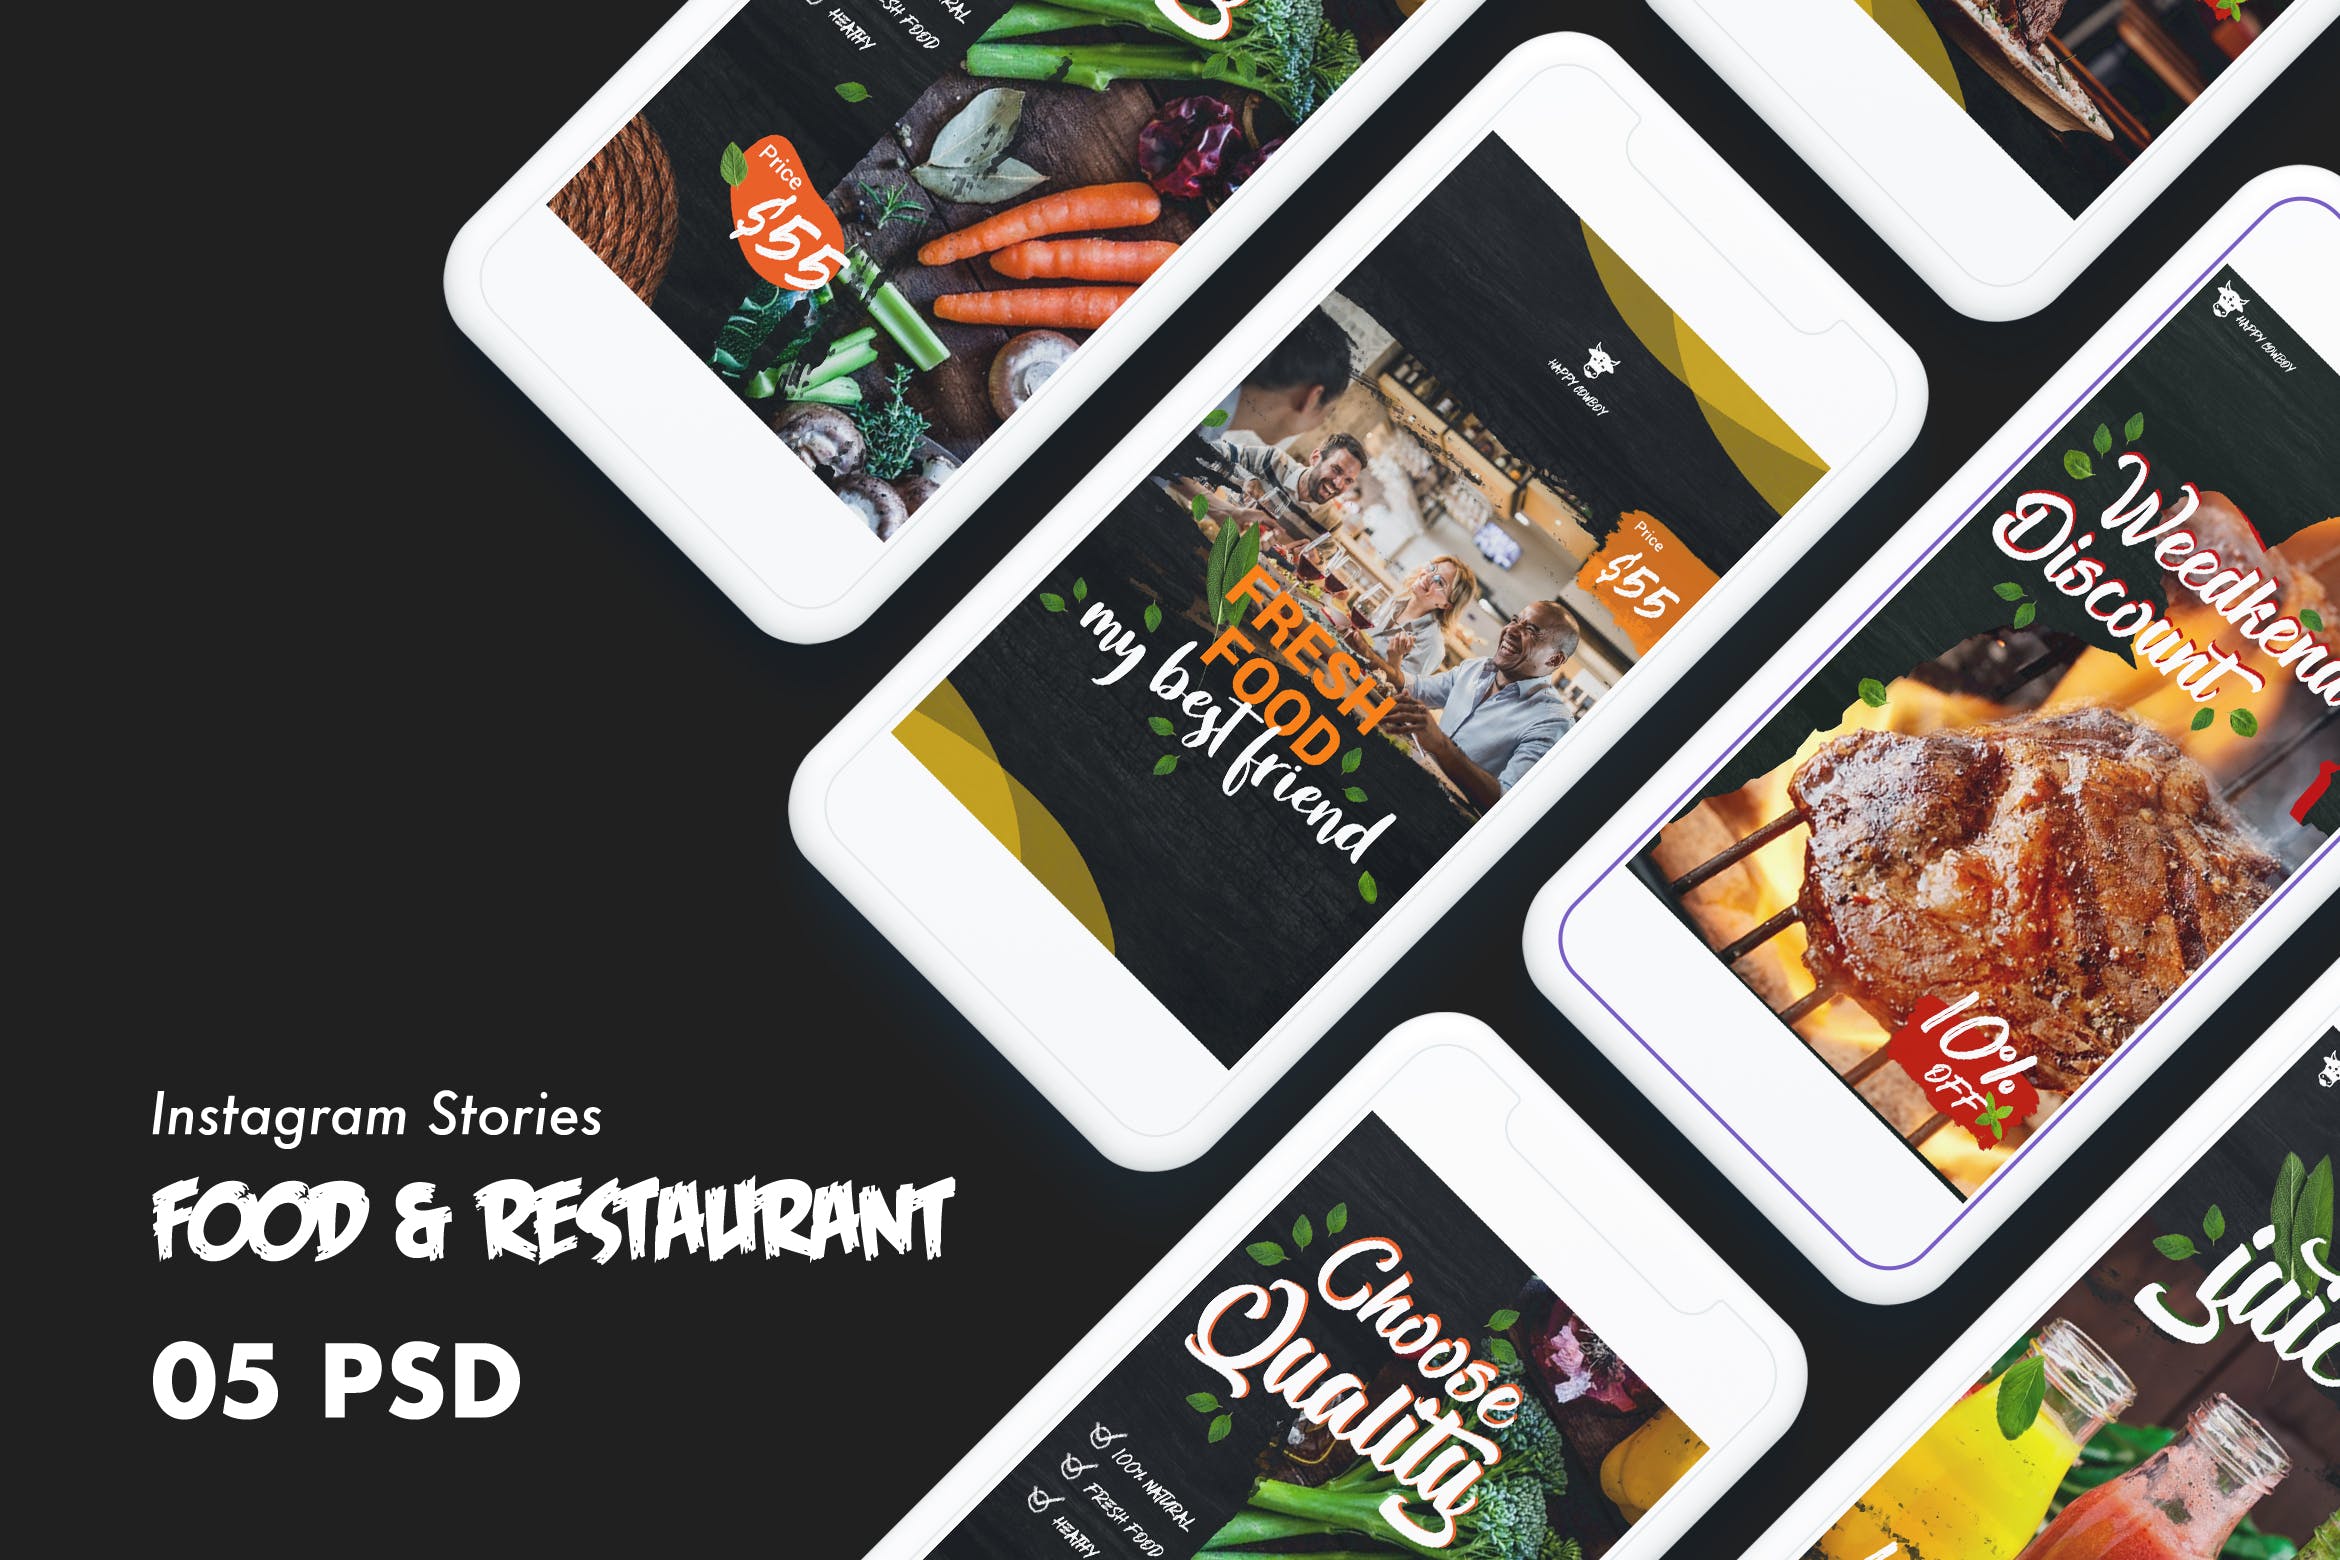 西式美食&餐厅Instagram品牌广告设计PSD模板素材库精选 Food & Restaurants Instagram Stories PSD Template插图